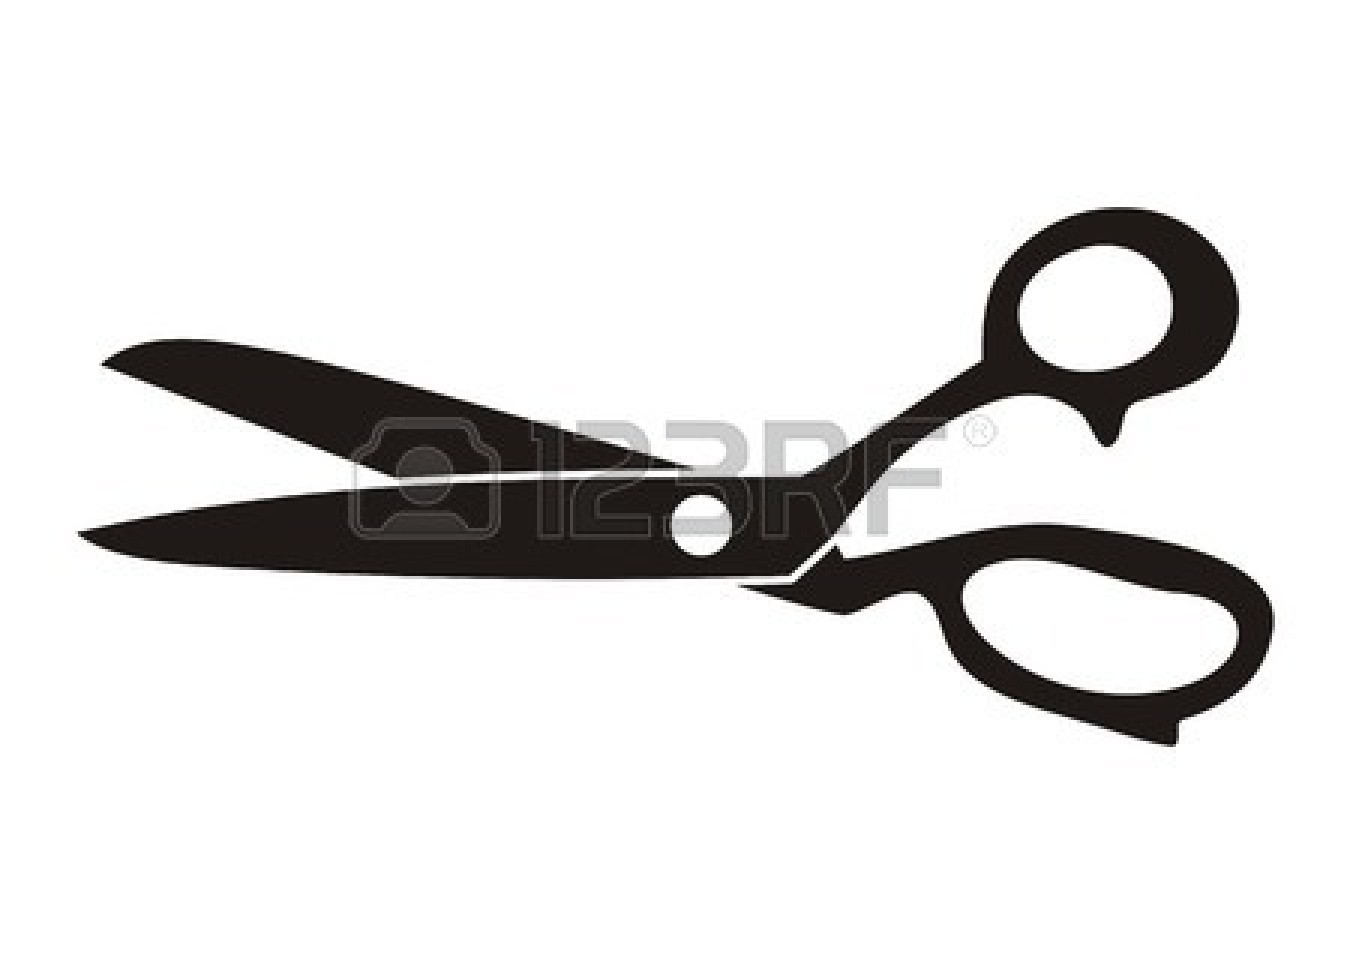 Scissors Black And White 23125003 Black Retro Scissors Icon On A White    